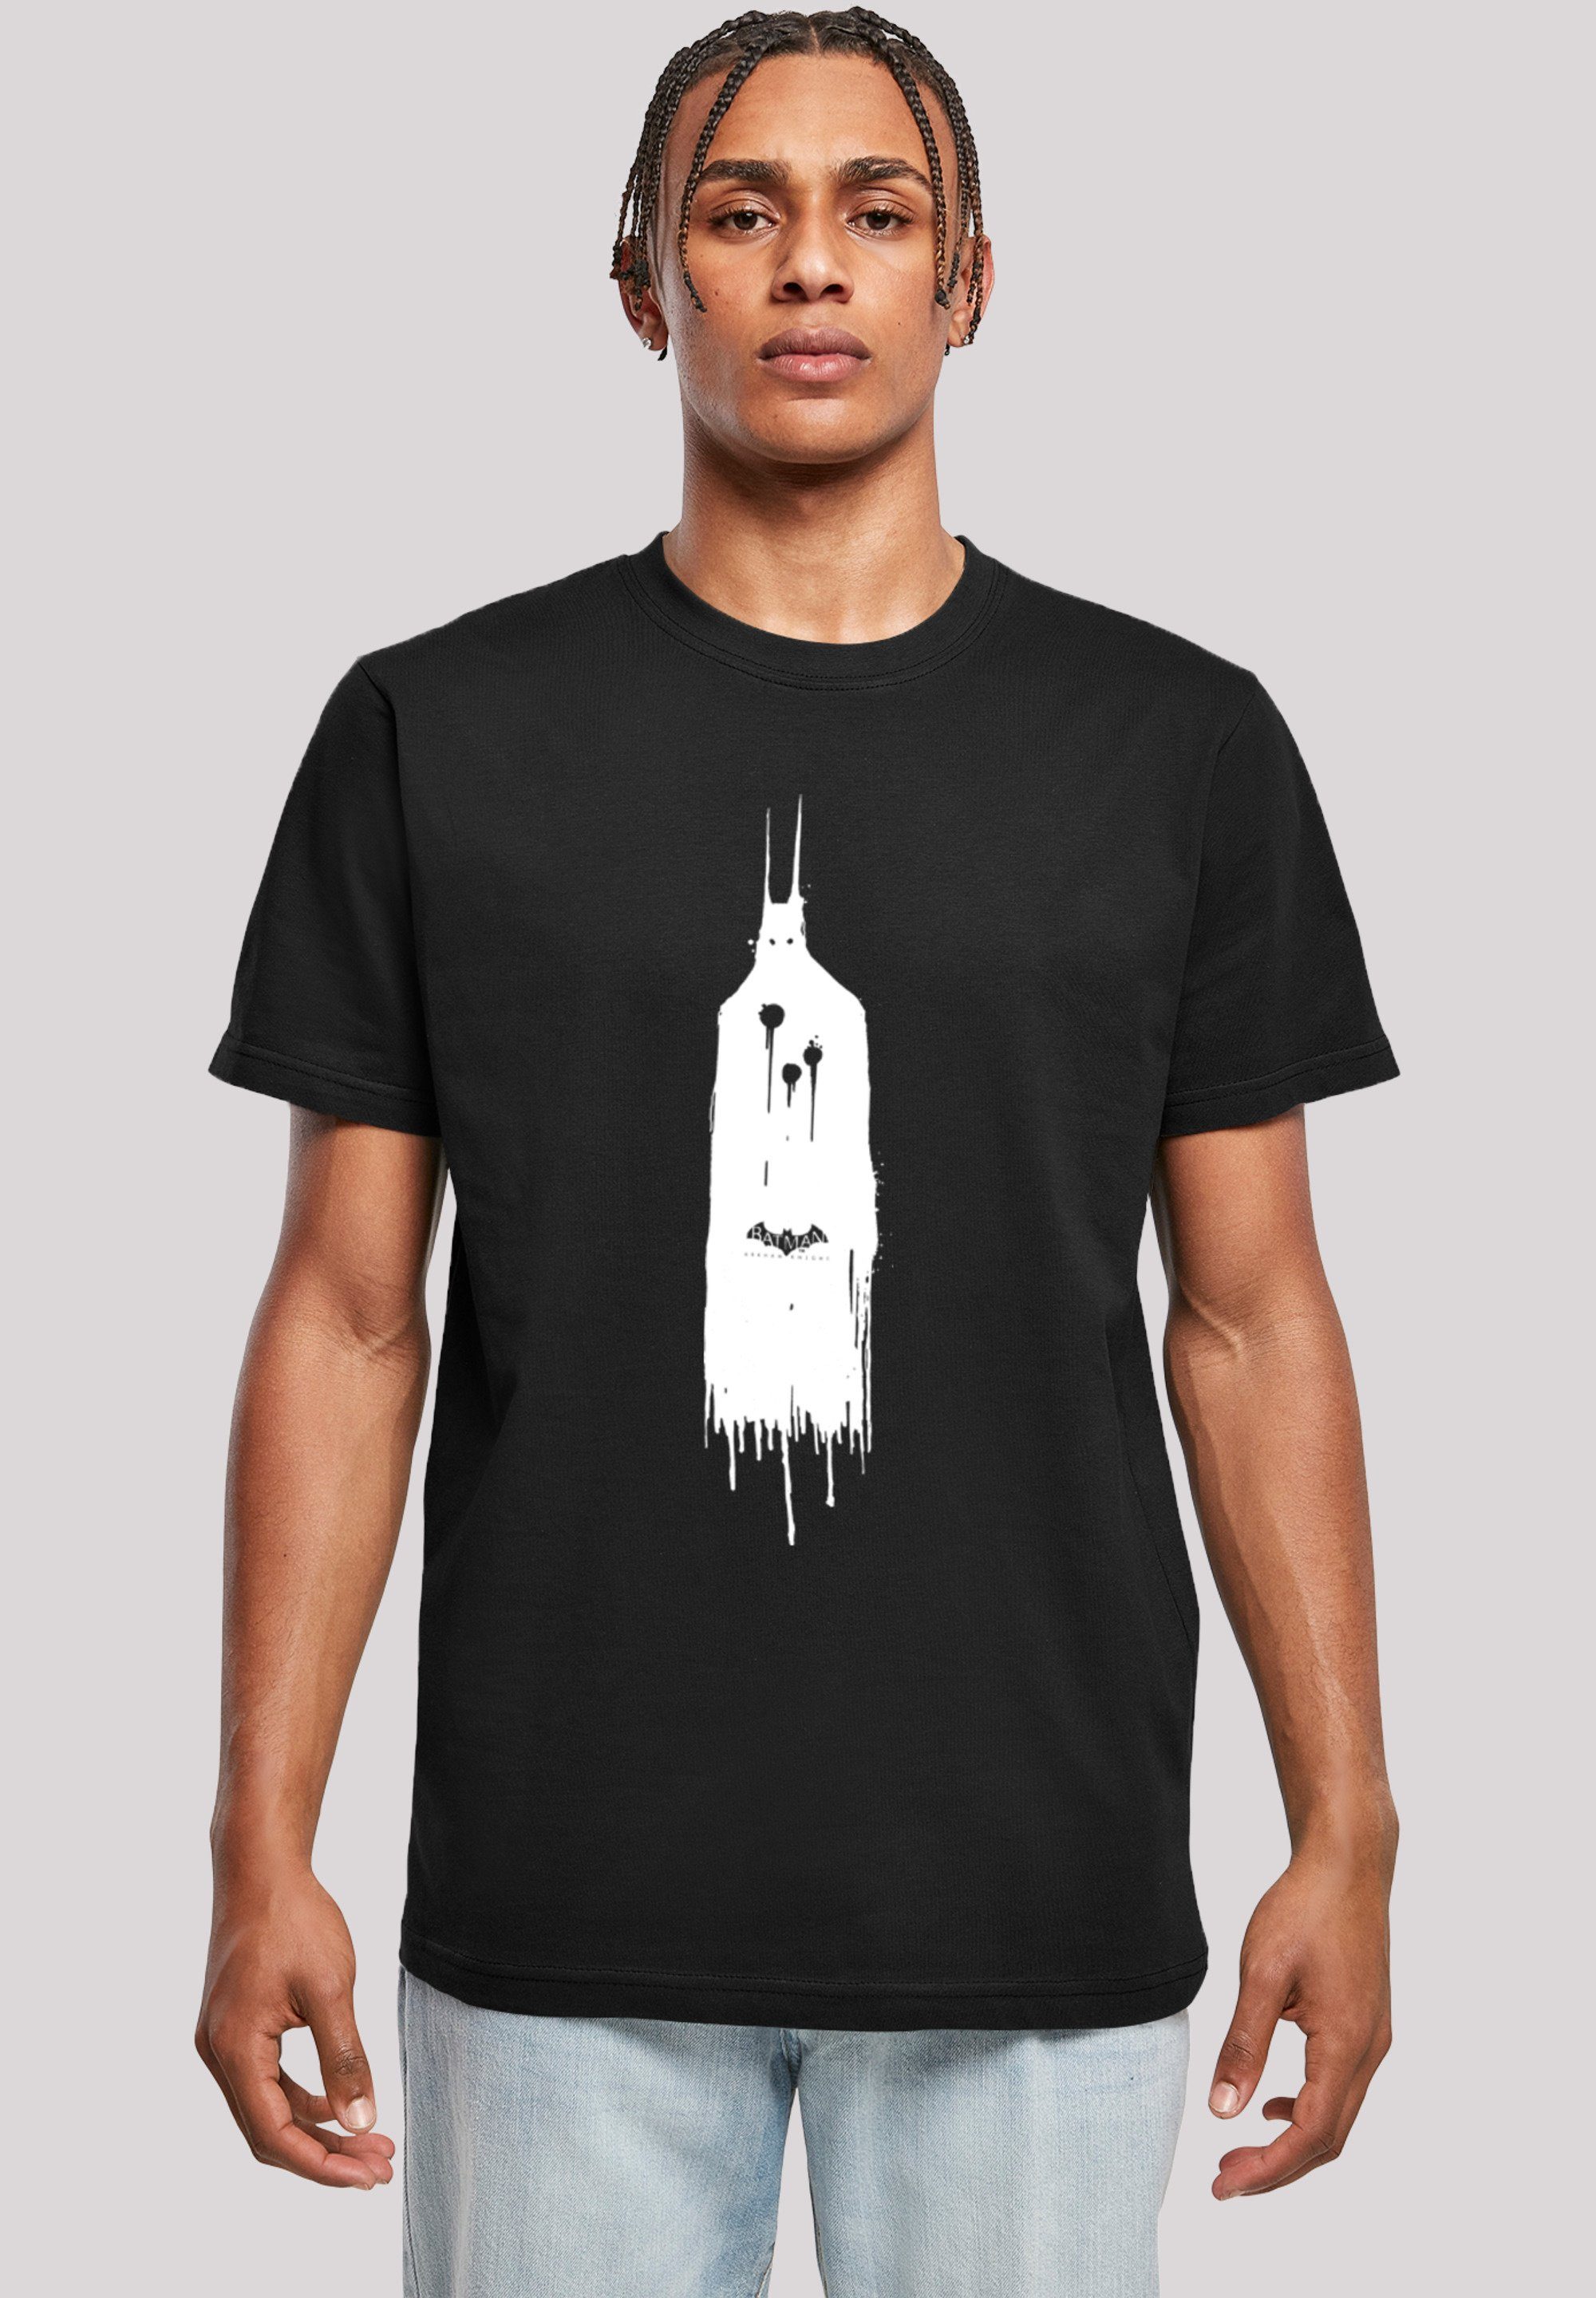 F4NT4STIC T-Shirt DC Comics Batman Arkham Knight Ghost Print